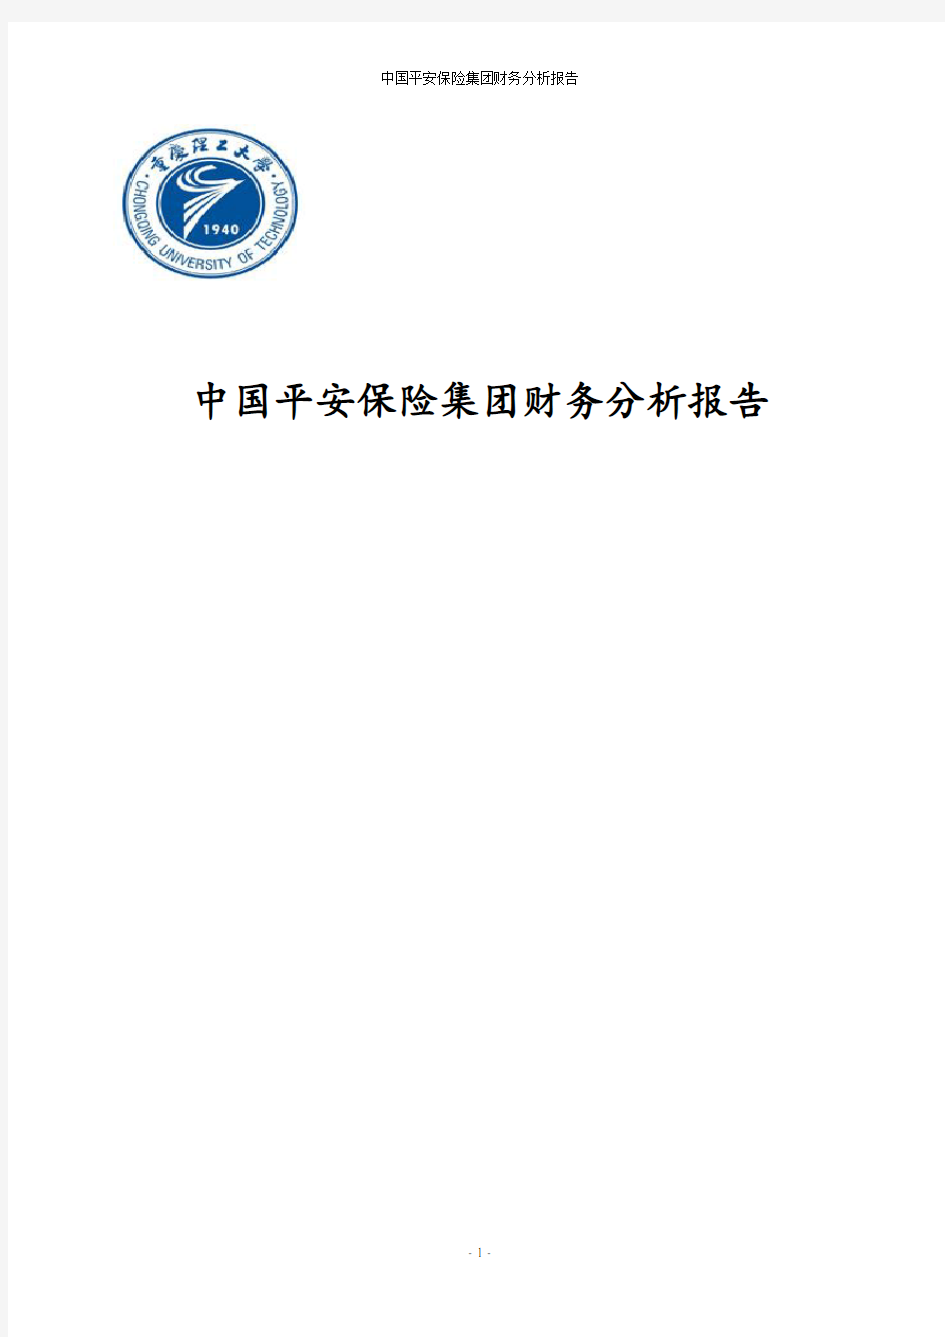 中国平安保险集团财务分析报告